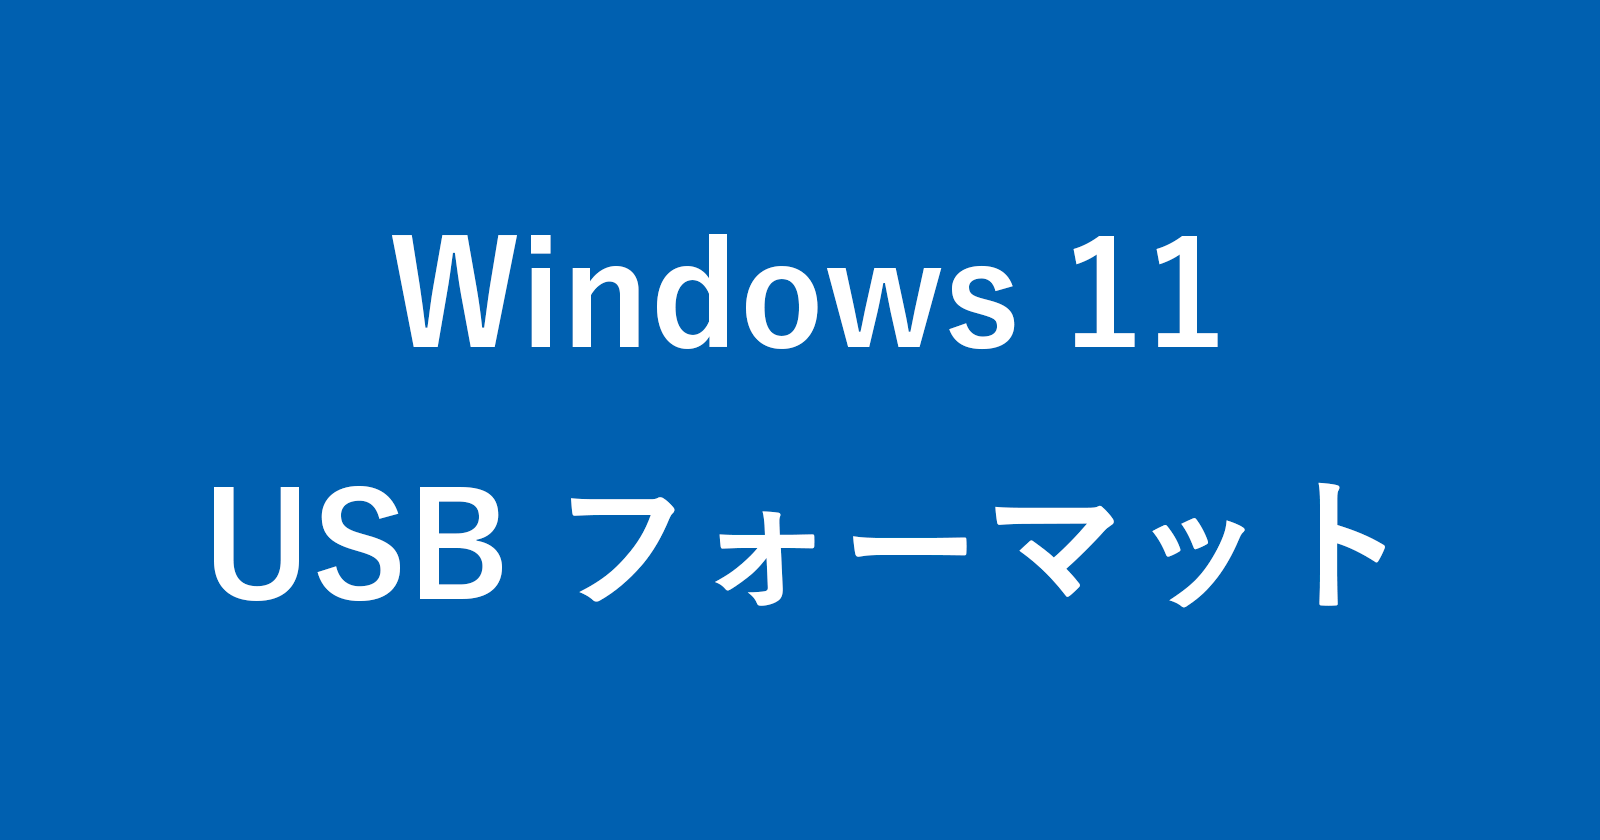 windows 11 format usb drive